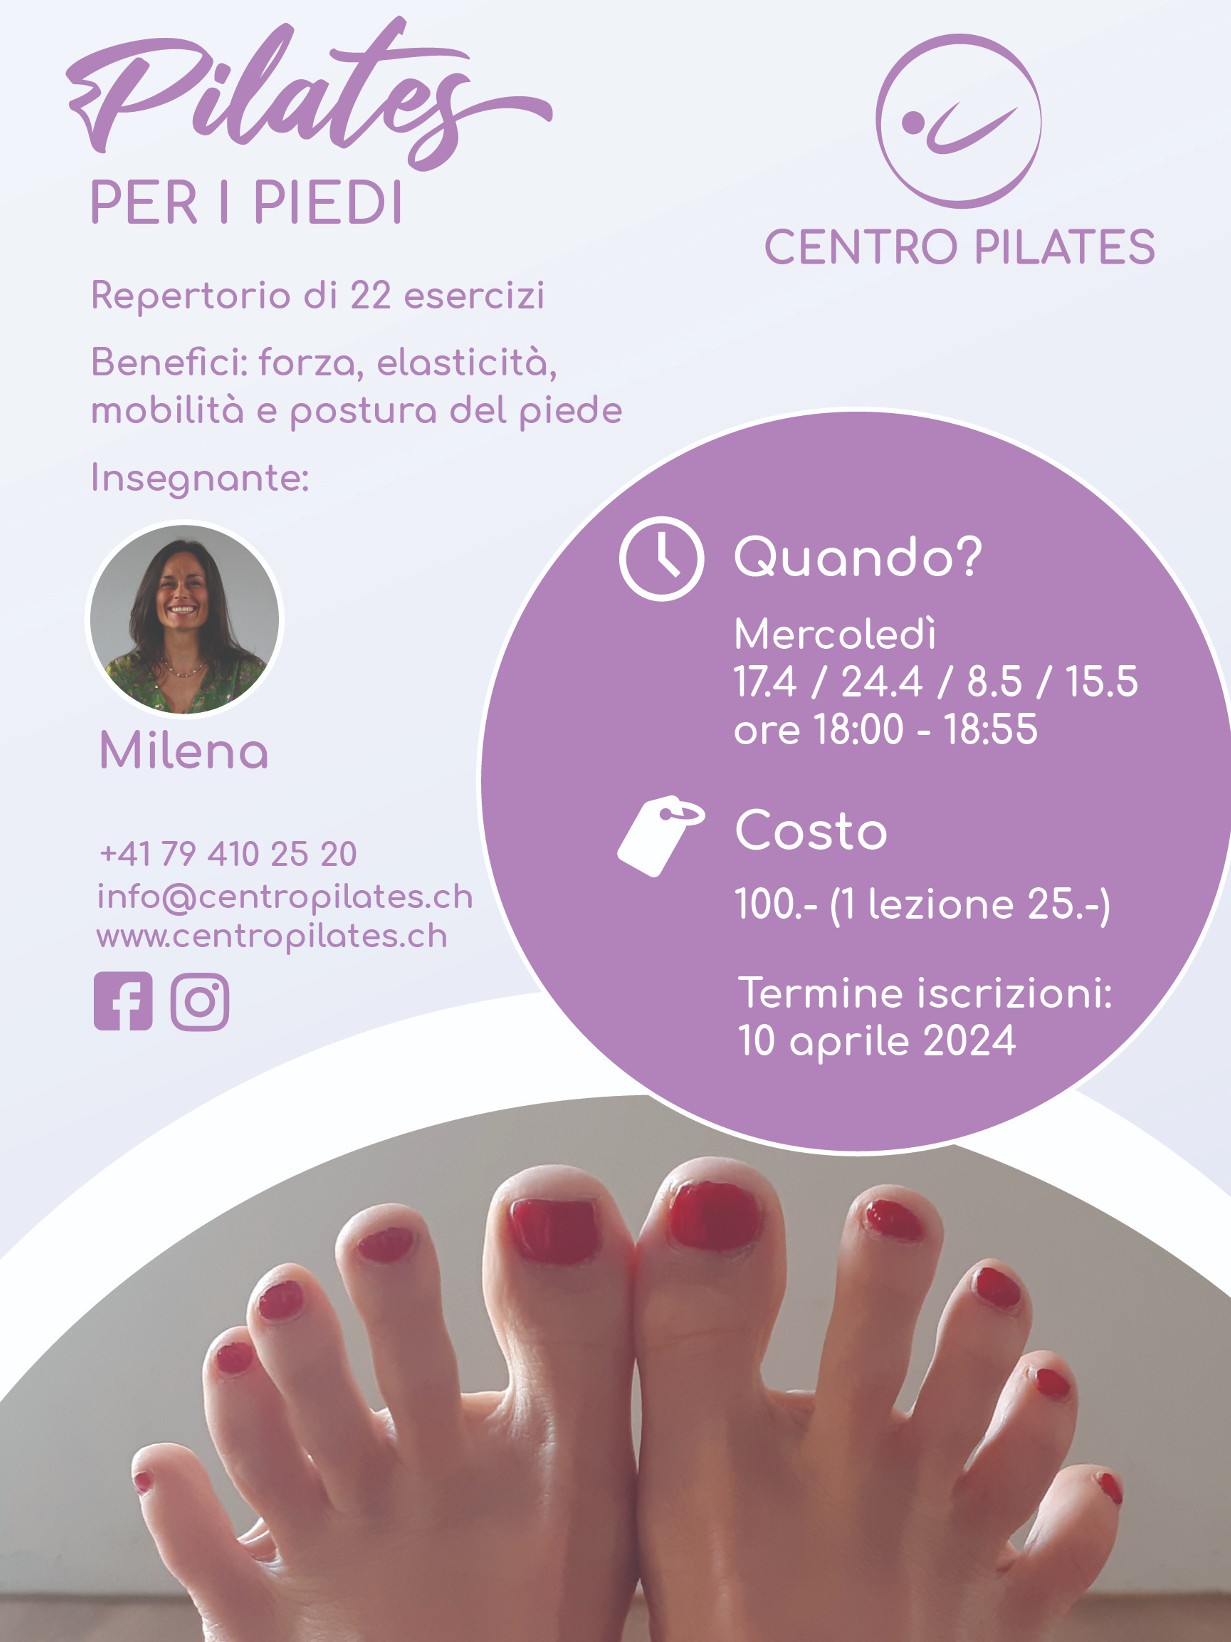 Corso Pilates per i piedi a Locarno in aprile 2024, Centro Pilates di Milena Jotti